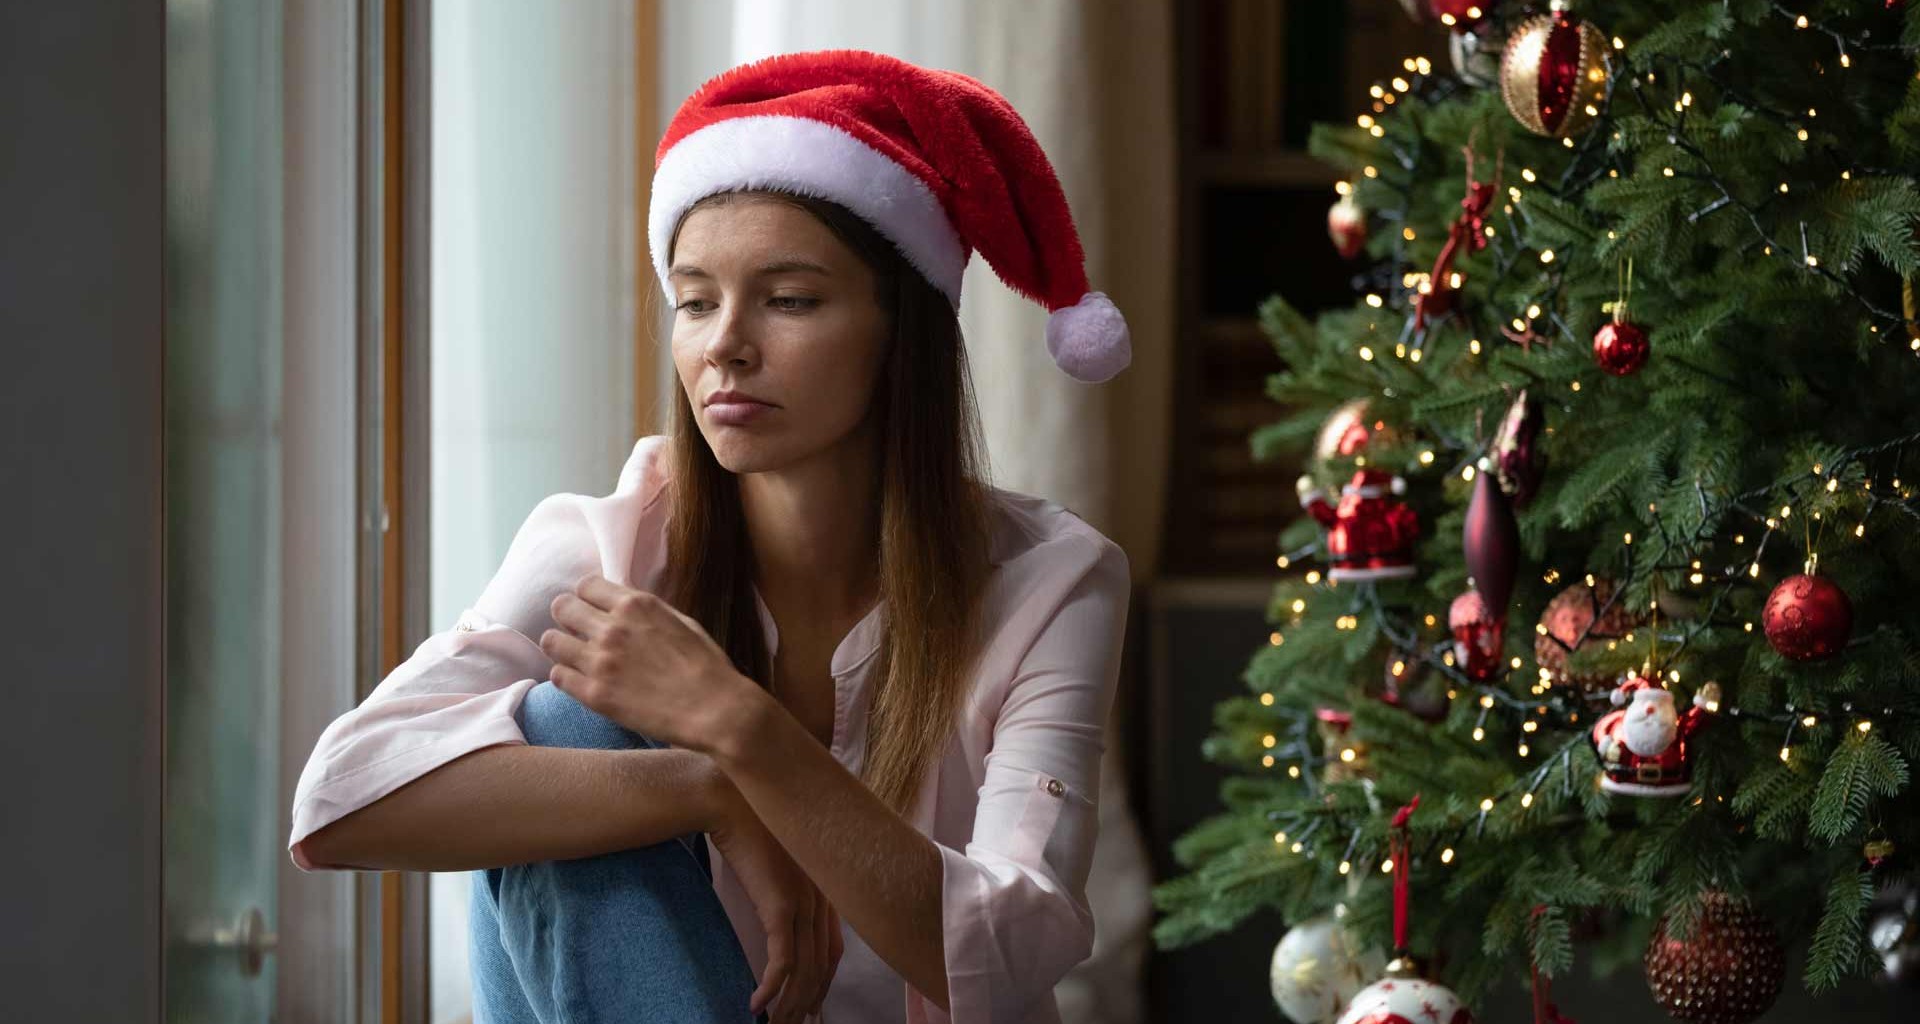 TEMPORADA. La presión comercial de la Navidad puede provocar estrés, ansiedad o tristeza.